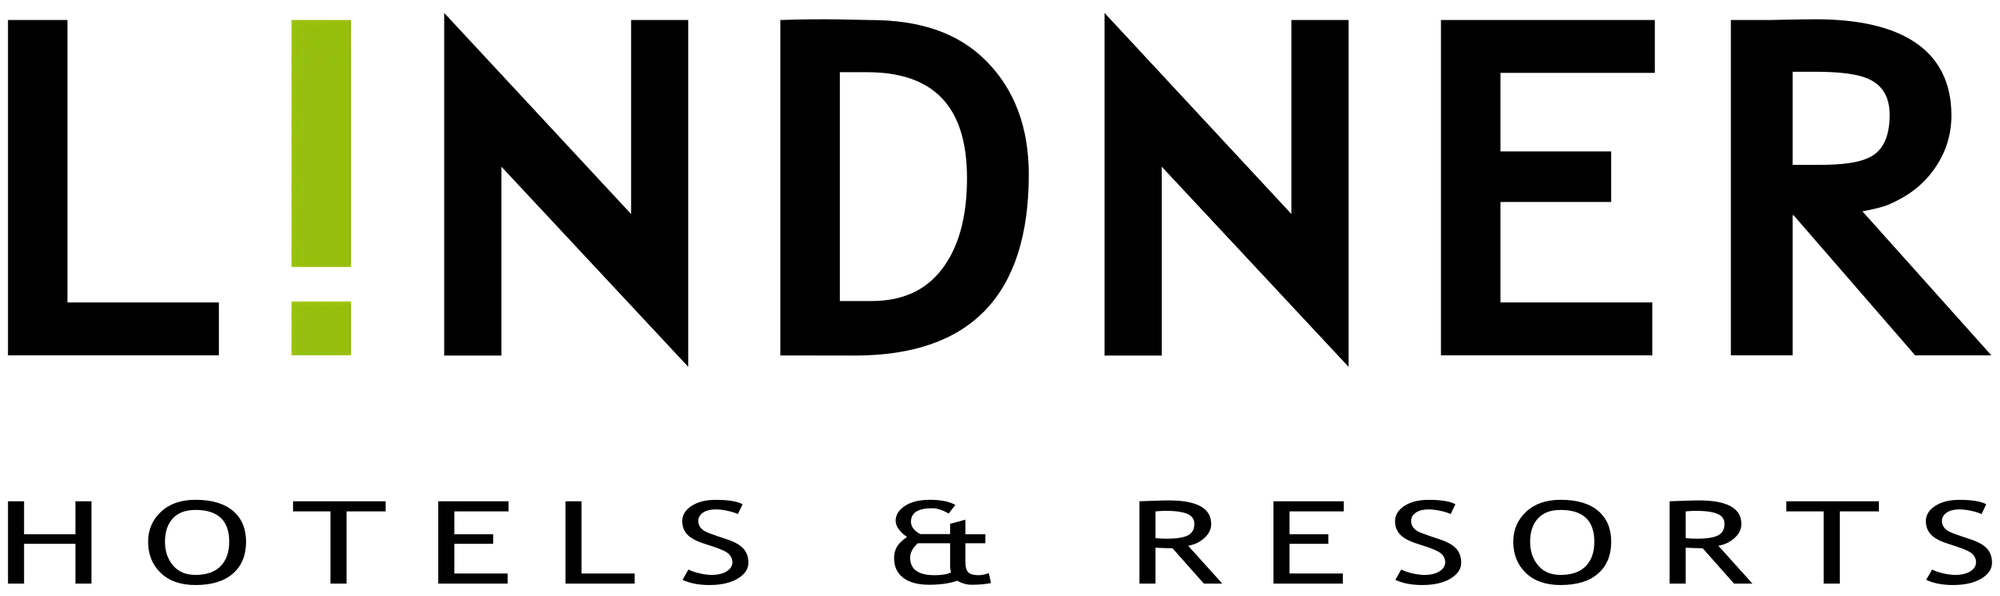 Lindner Logo für Bahn und Hotel